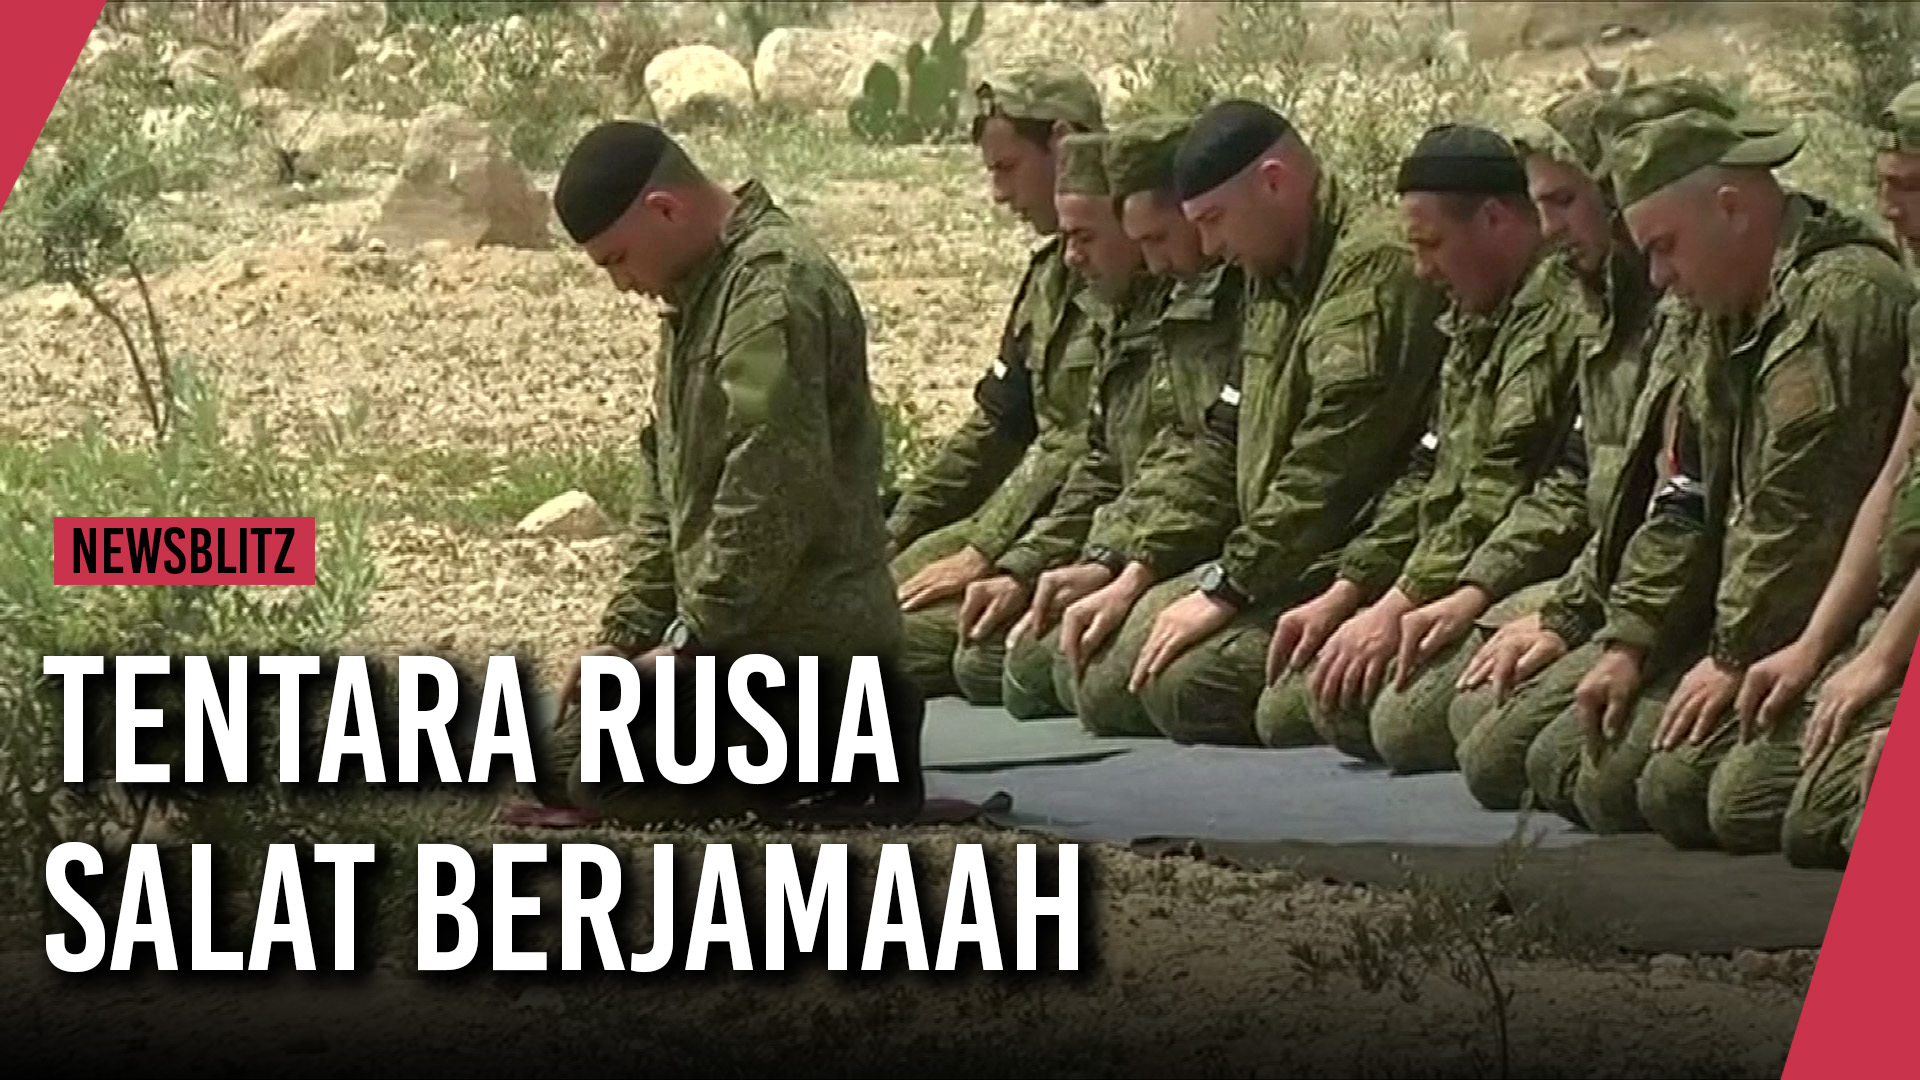 Tentara Rusia salat berjamaah di kota yang diduduki pemberontak Suriah